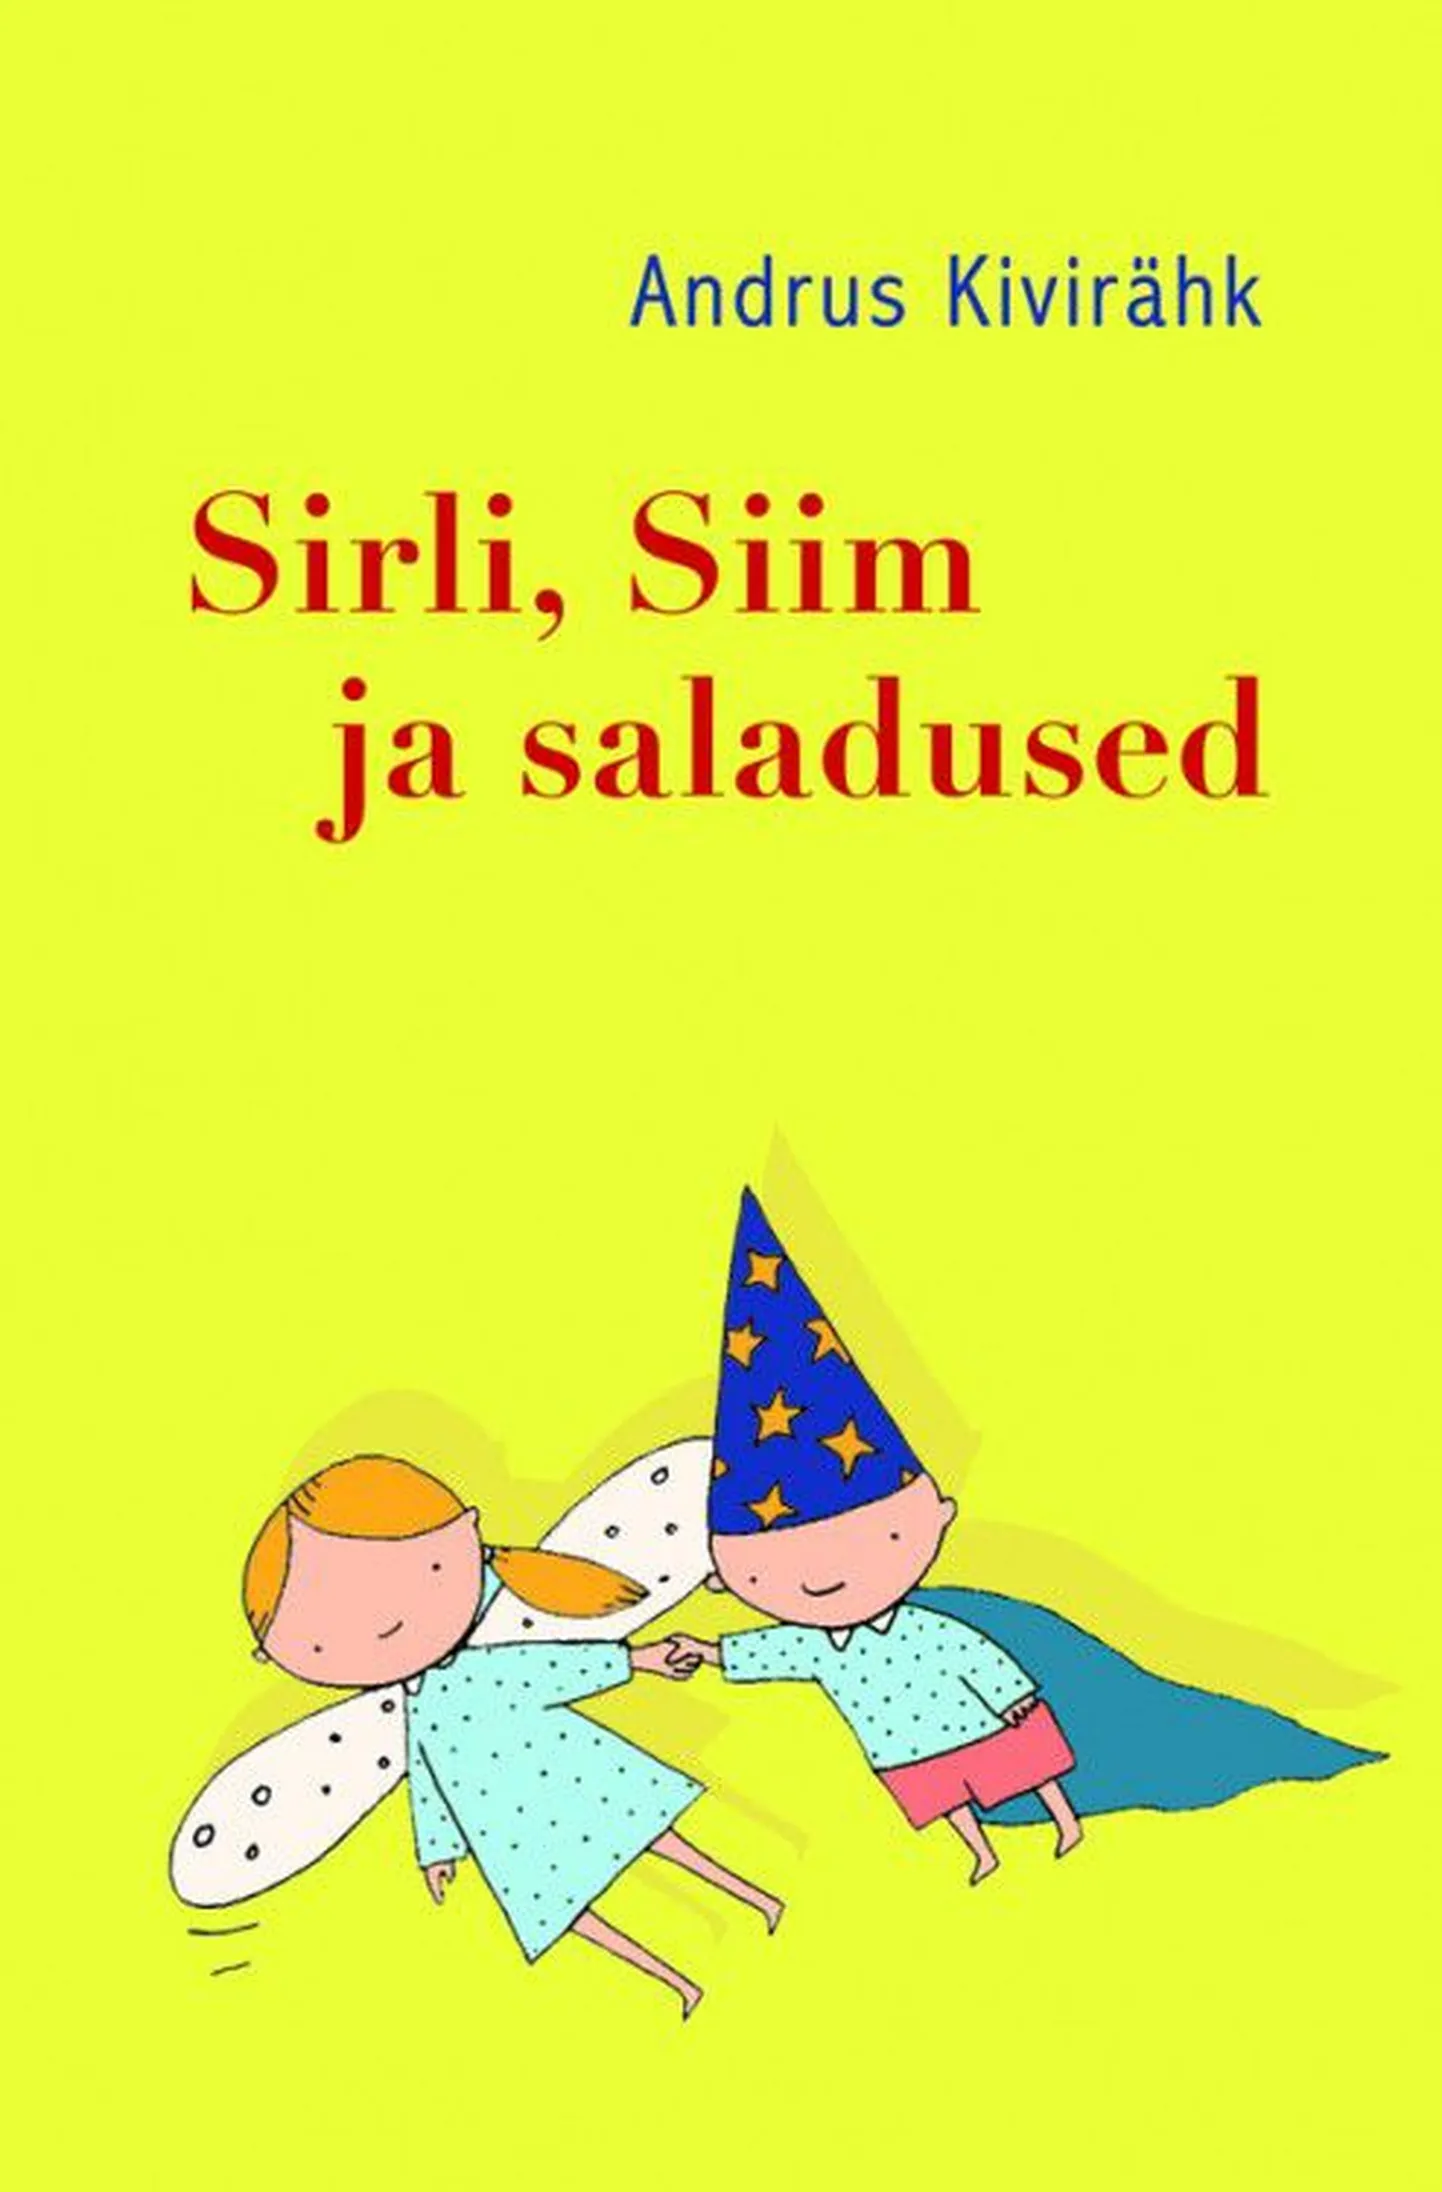 Andrus Kivirähu raamatu "Sirli, Siim ja saladused" kaas.